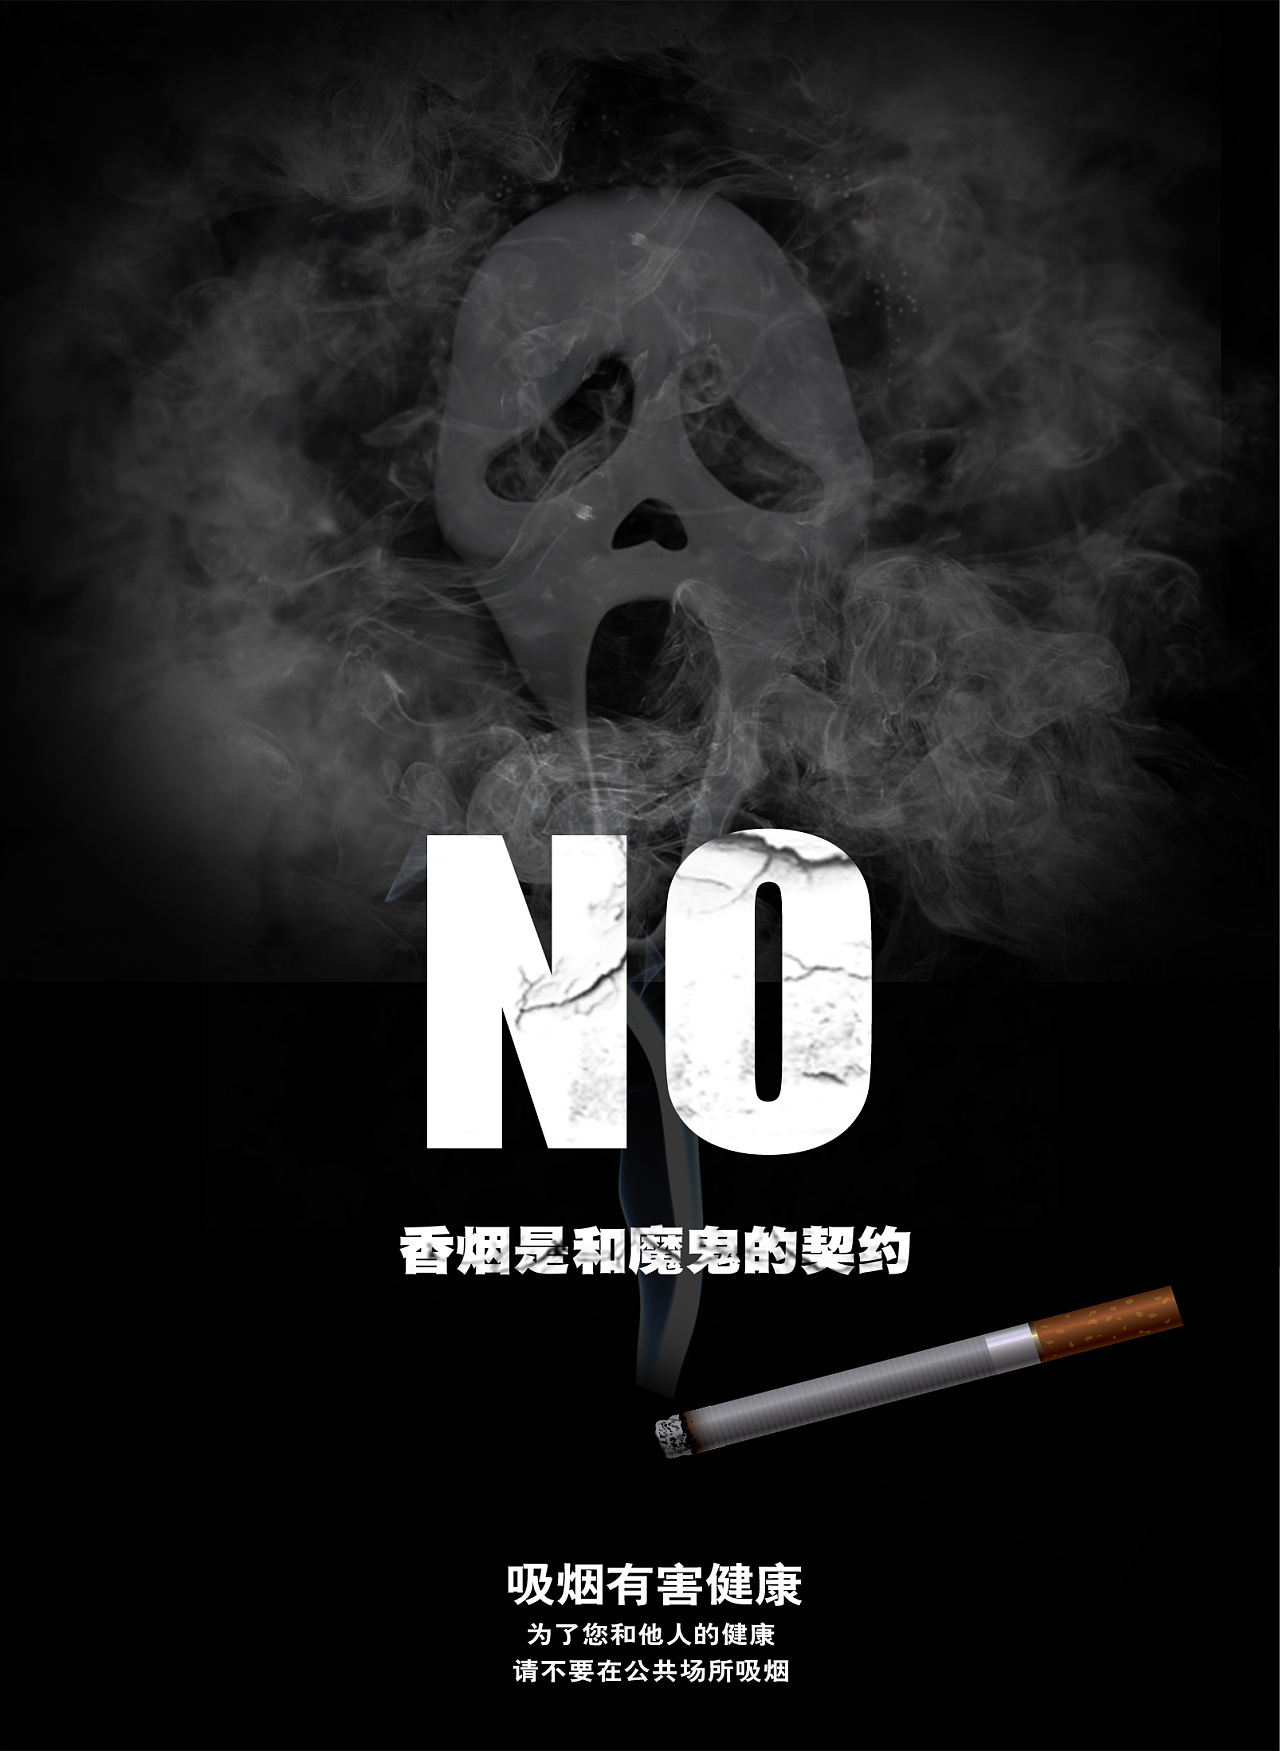 黄黑色戒烟黑白广告公益中文海报 - 模板 - Canva可画